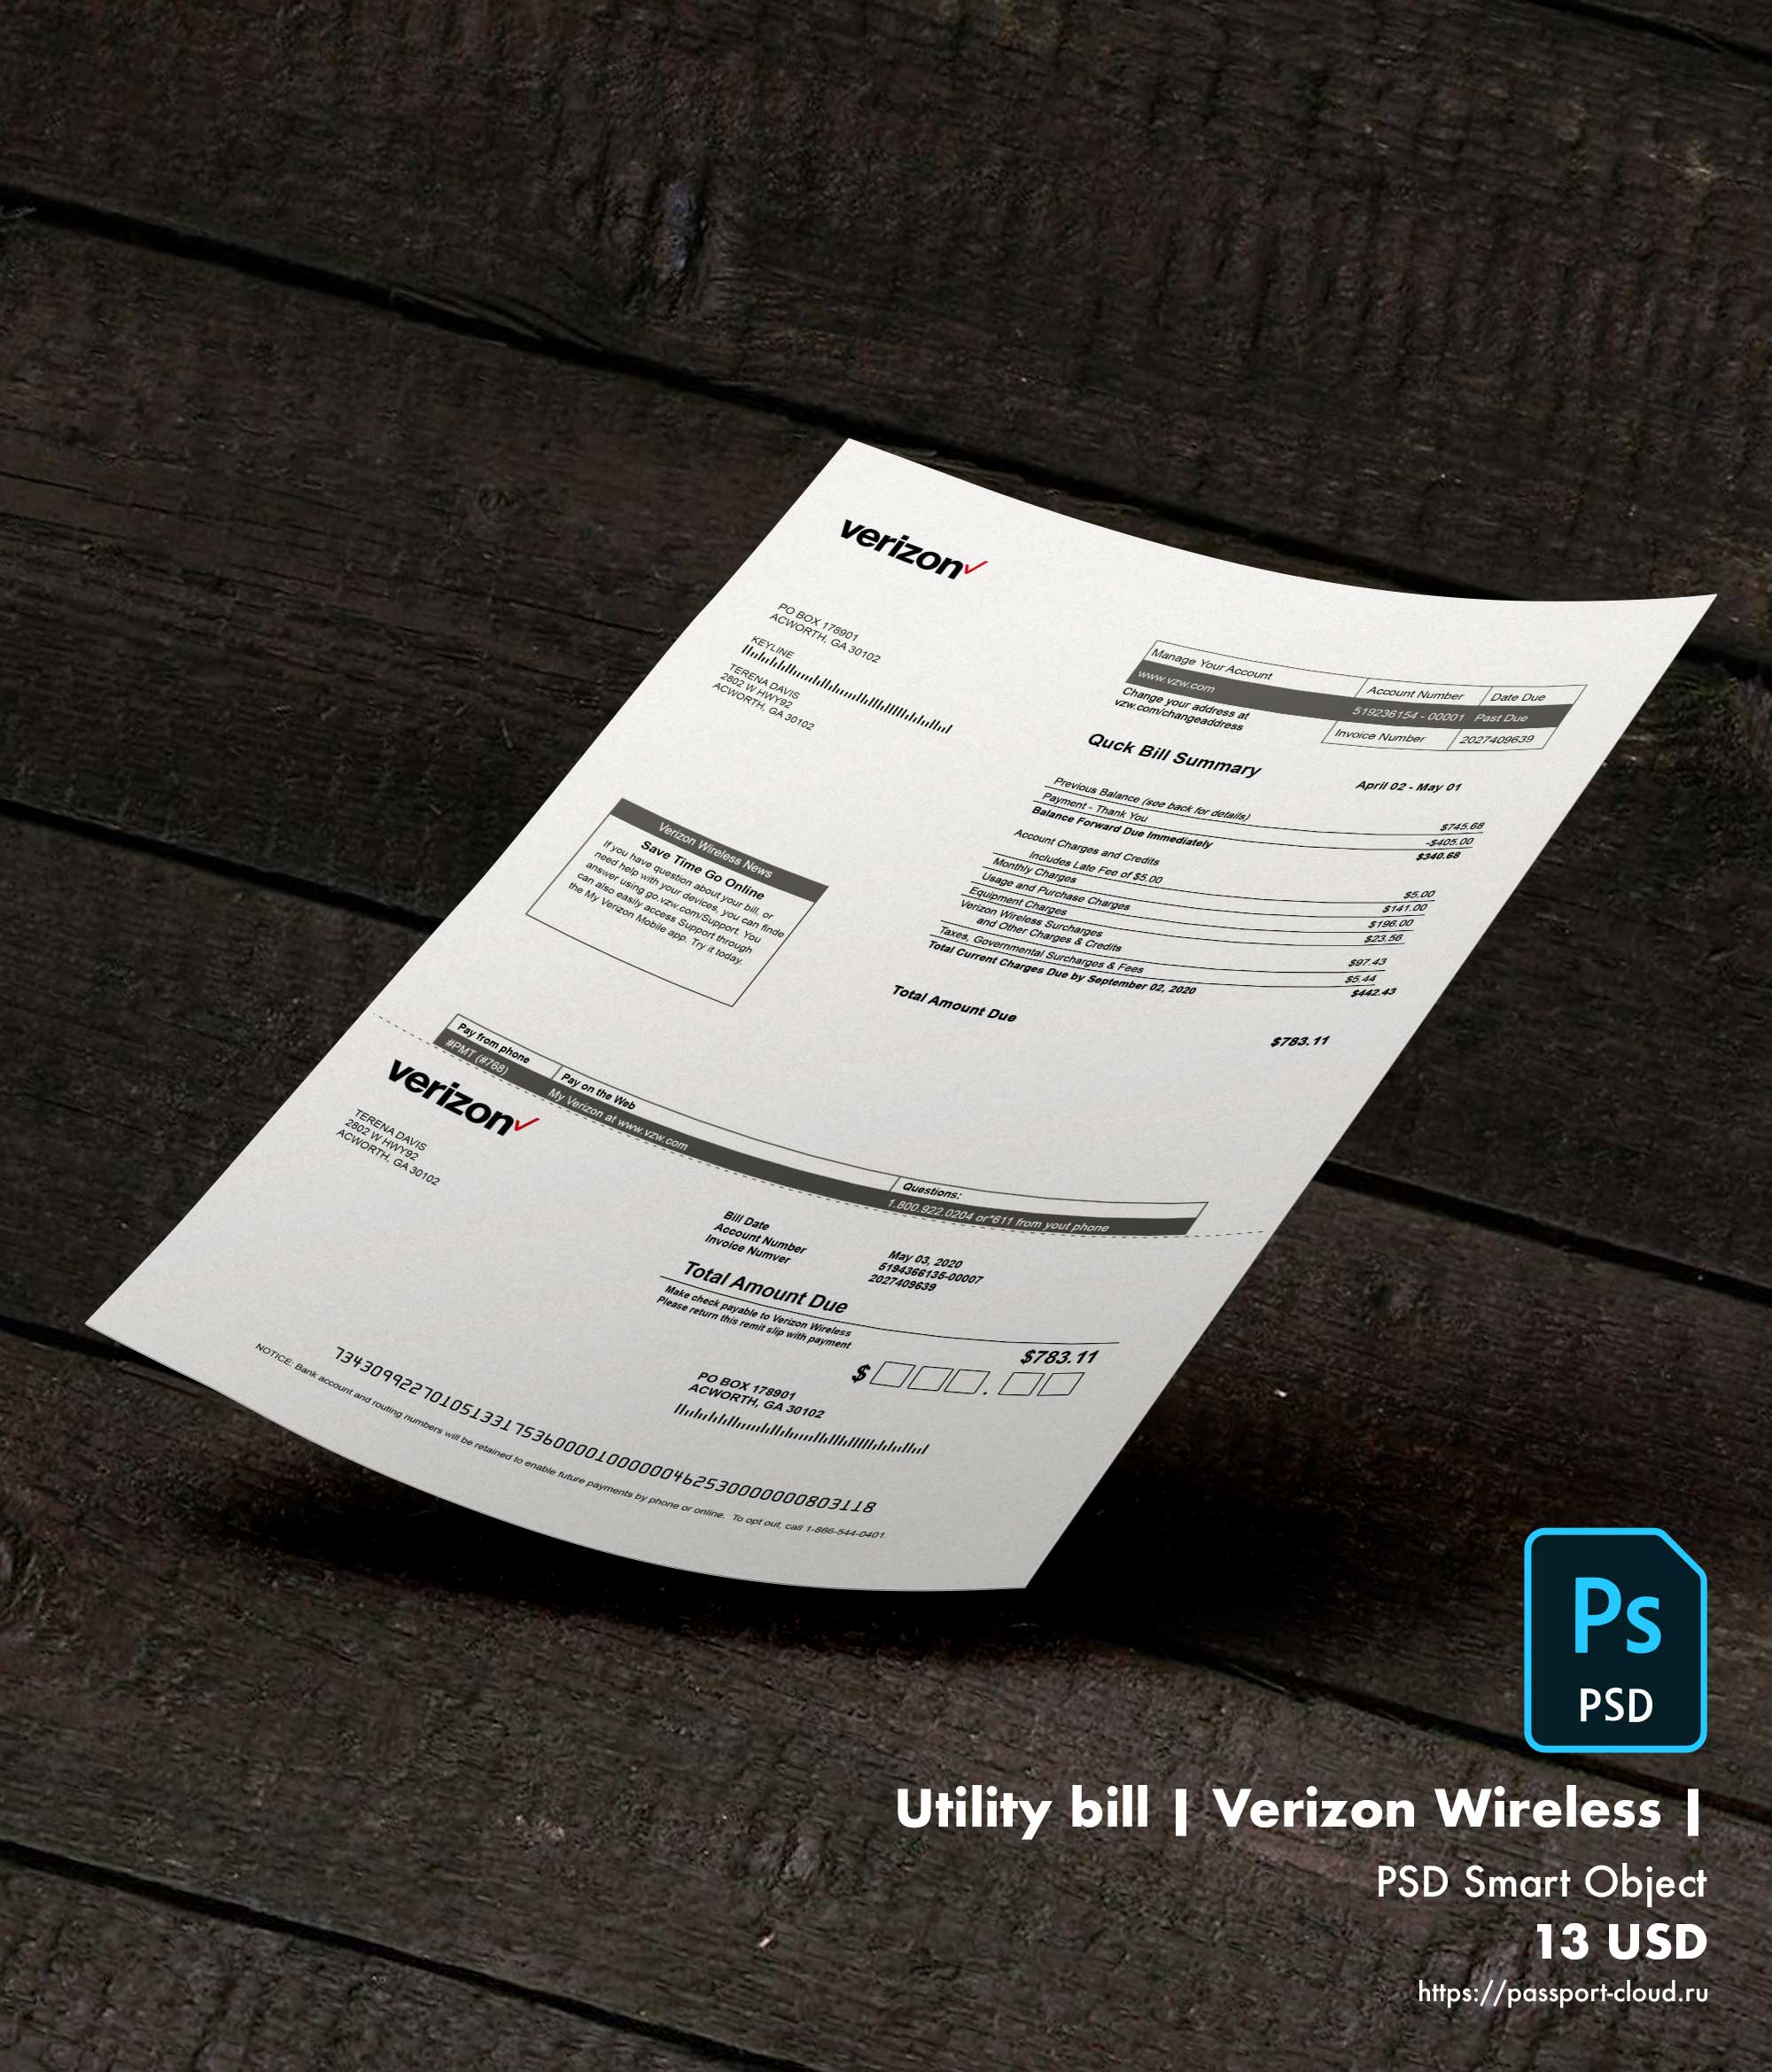 Utility bill | Verizon Wireless | USA |1